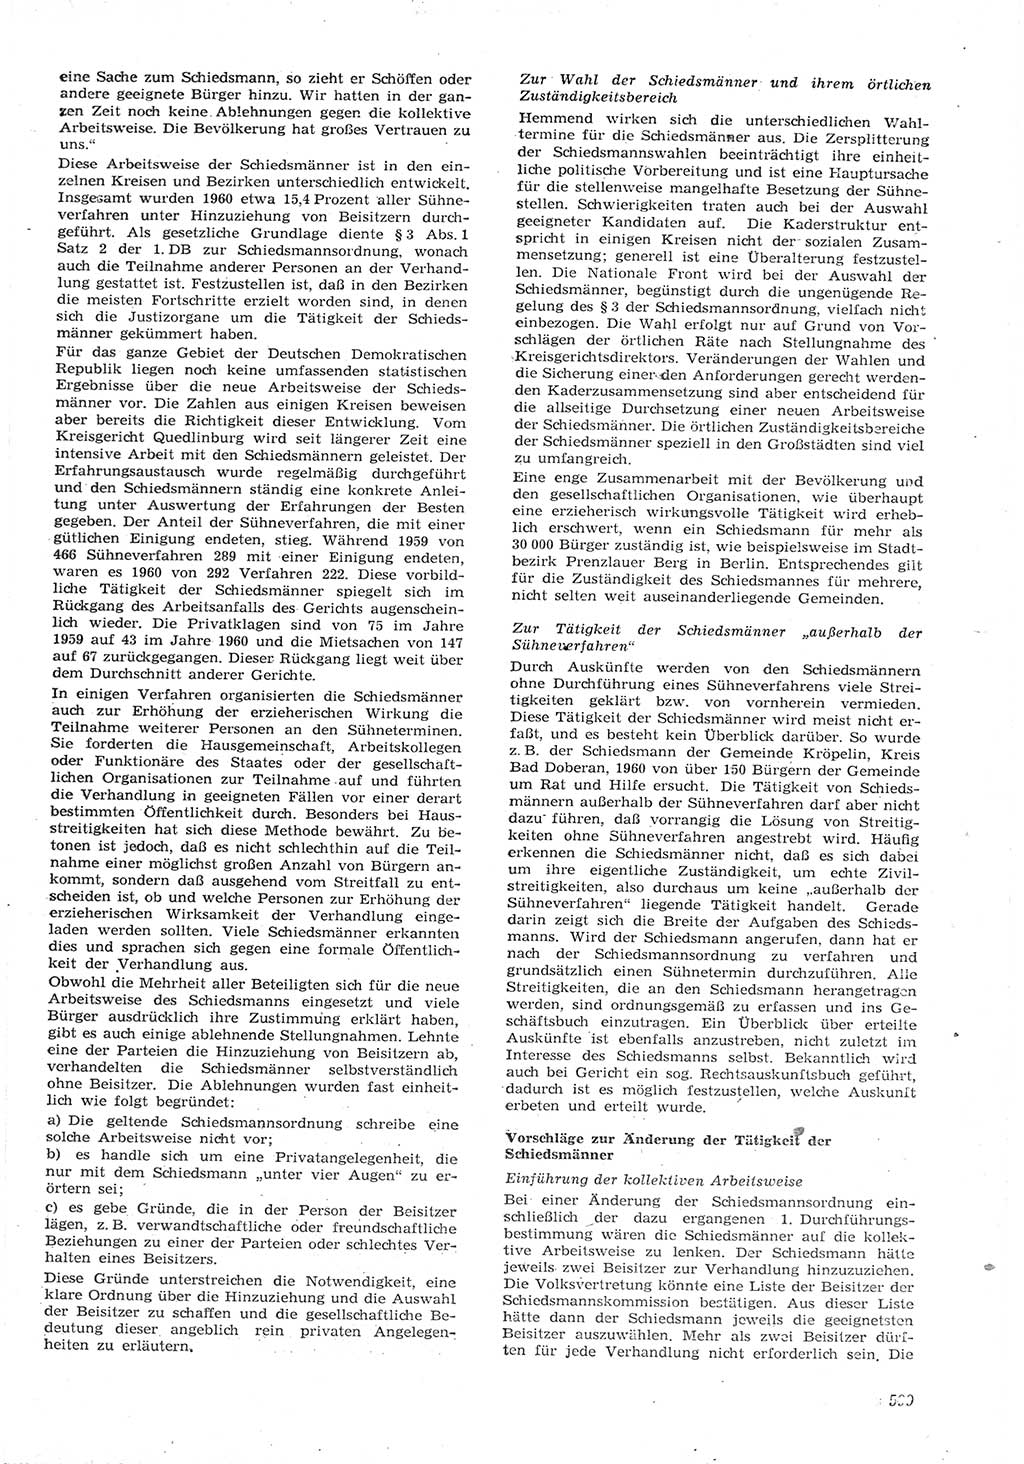 Neue Justiz (NJ), Zeitschrift für Recht und Rechtswissenschaft [Deutsche Demokratische Republik (DDR)], 15. Jahrgang 1961, Seite 599 (NJ DDR 1961, S. 599)